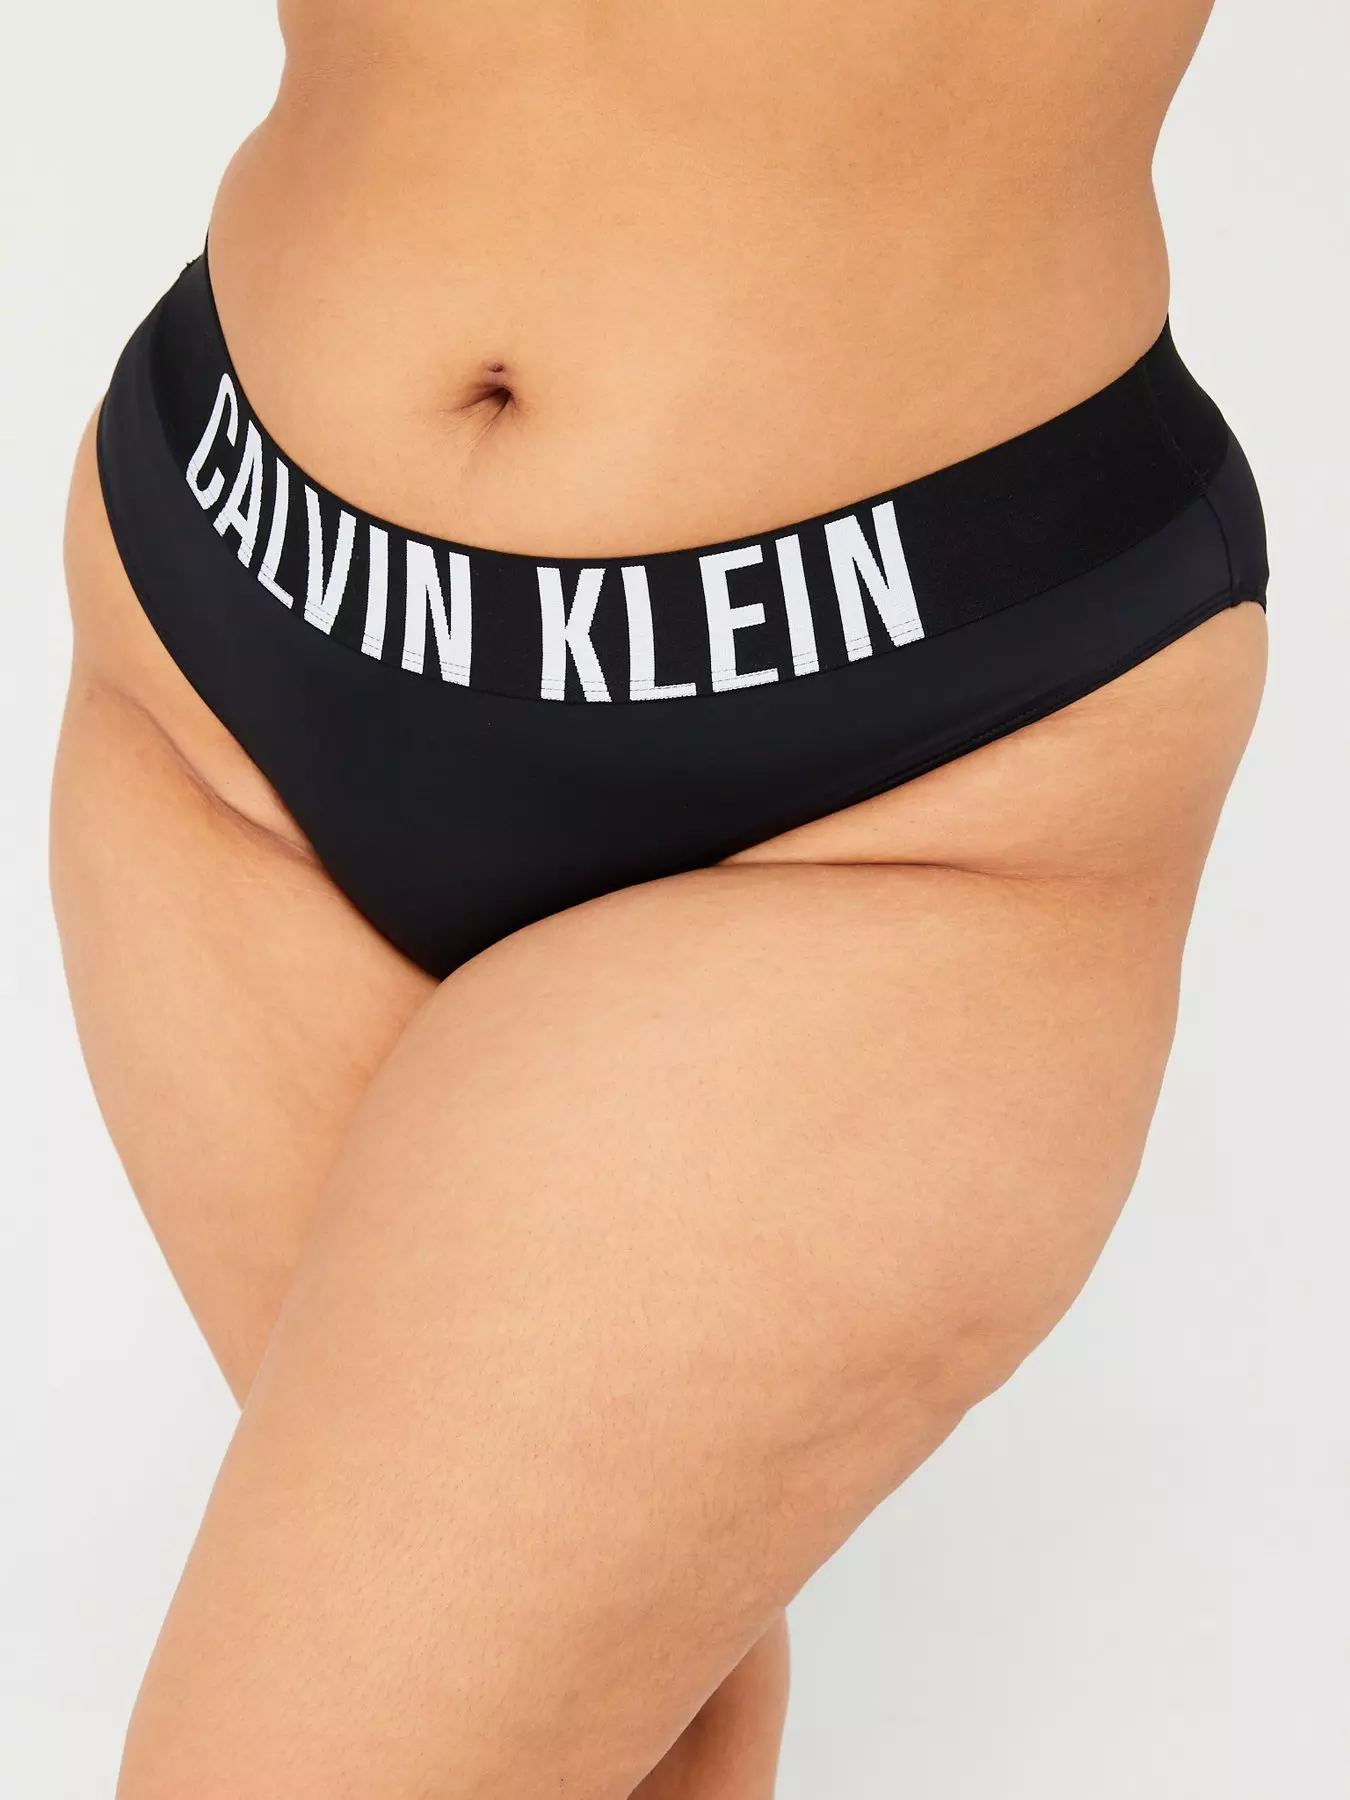 Bikini, Calvin klein, Knickers, Lingerie, Women